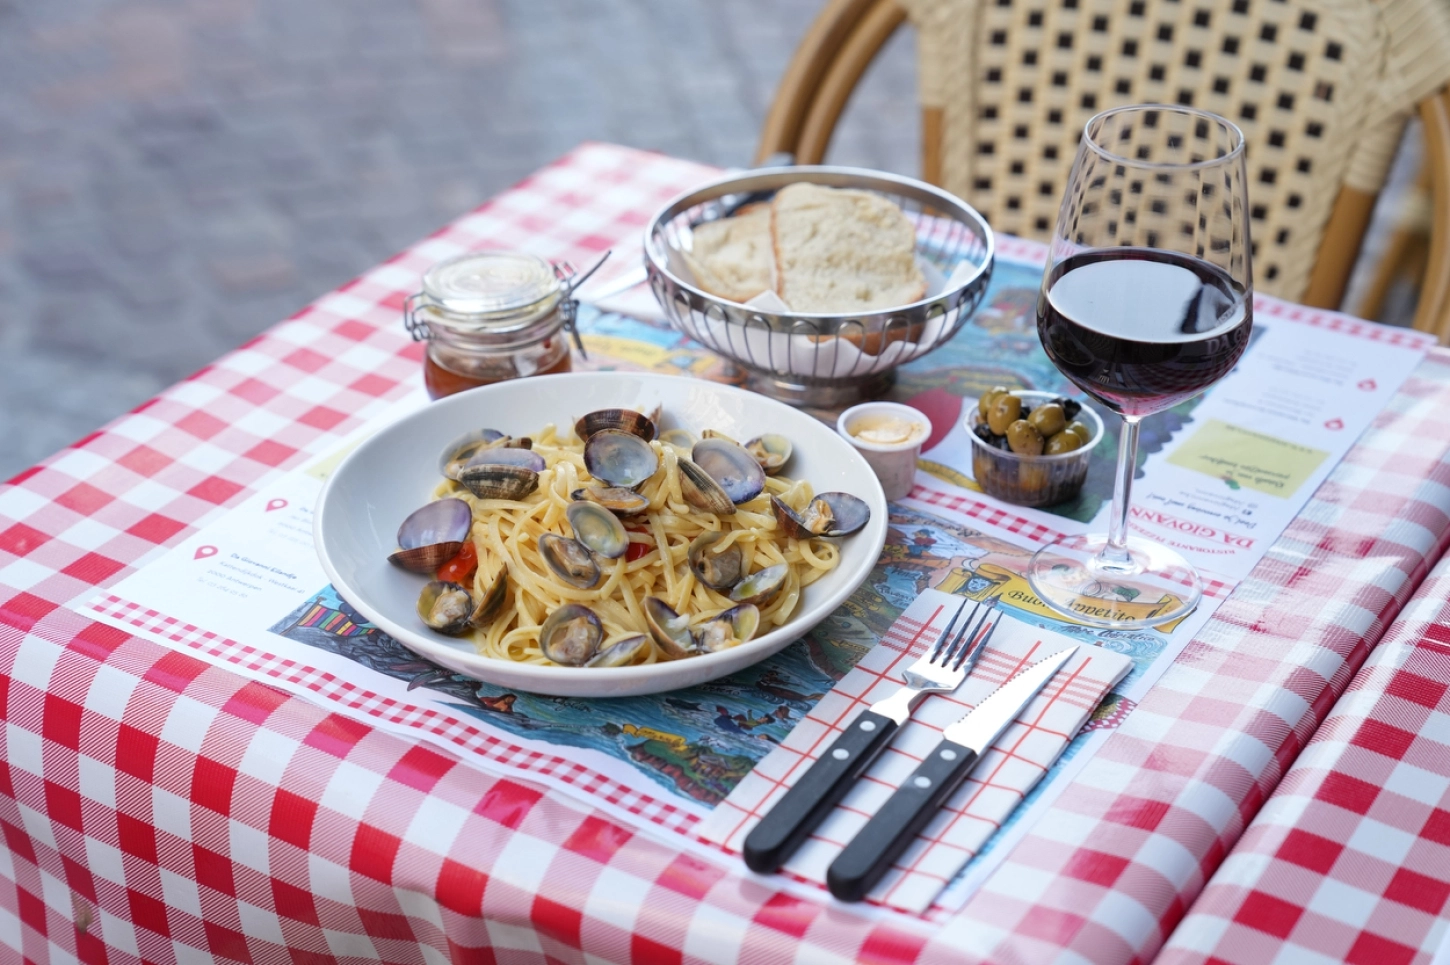 Benieuwd welke pasta onze kok doet denken aan een mooie zomerdag aan de kust in Italië?